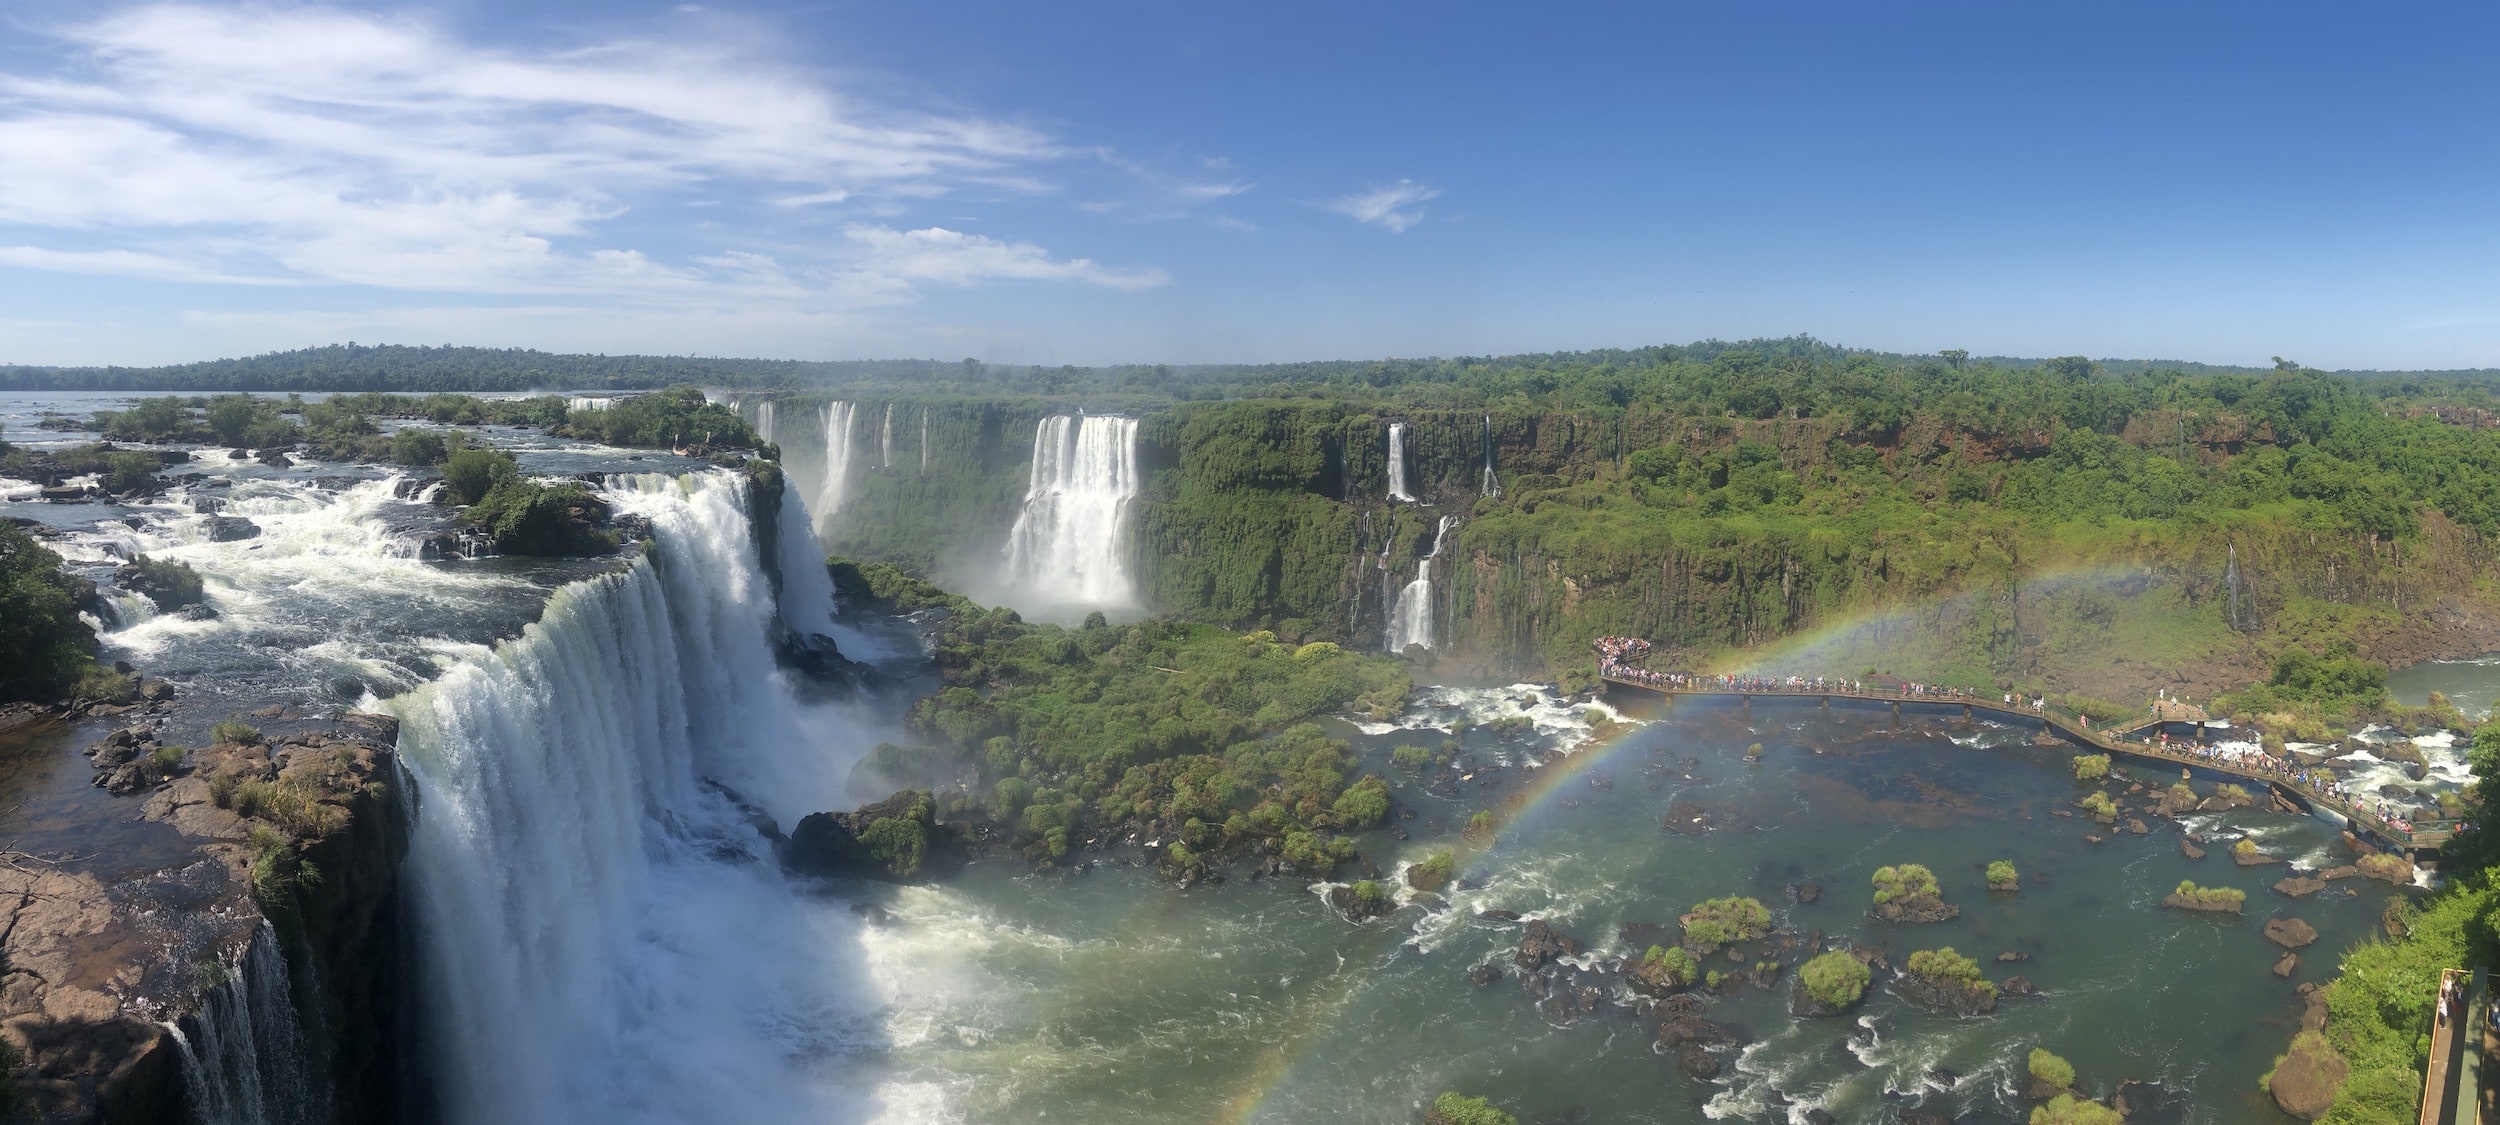 Birds eye view of Iguazu Falls with rainbow